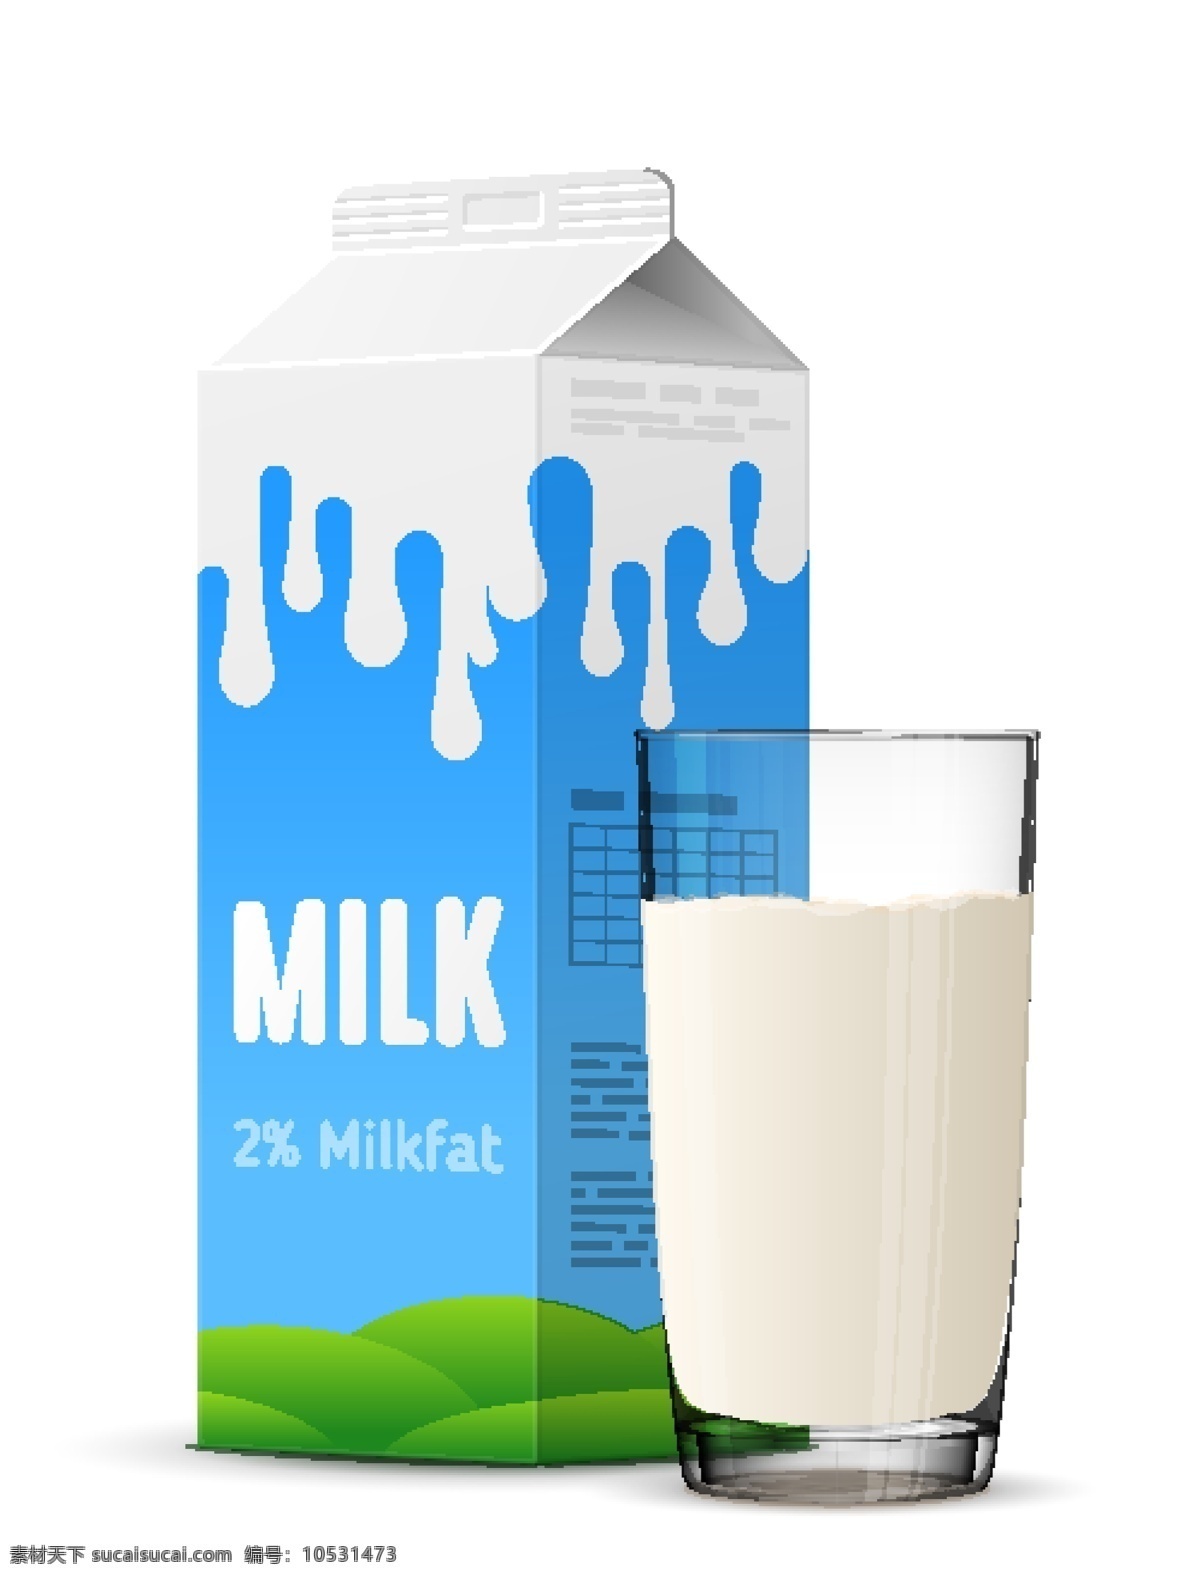 牛奶 乳制品 农场 鲜奶 牛奶标签 牛奶标志 奶制品标志 牛奶logo 奶制品 logo 乳制品广告 milk 杯子 牛奶包装 包装设计